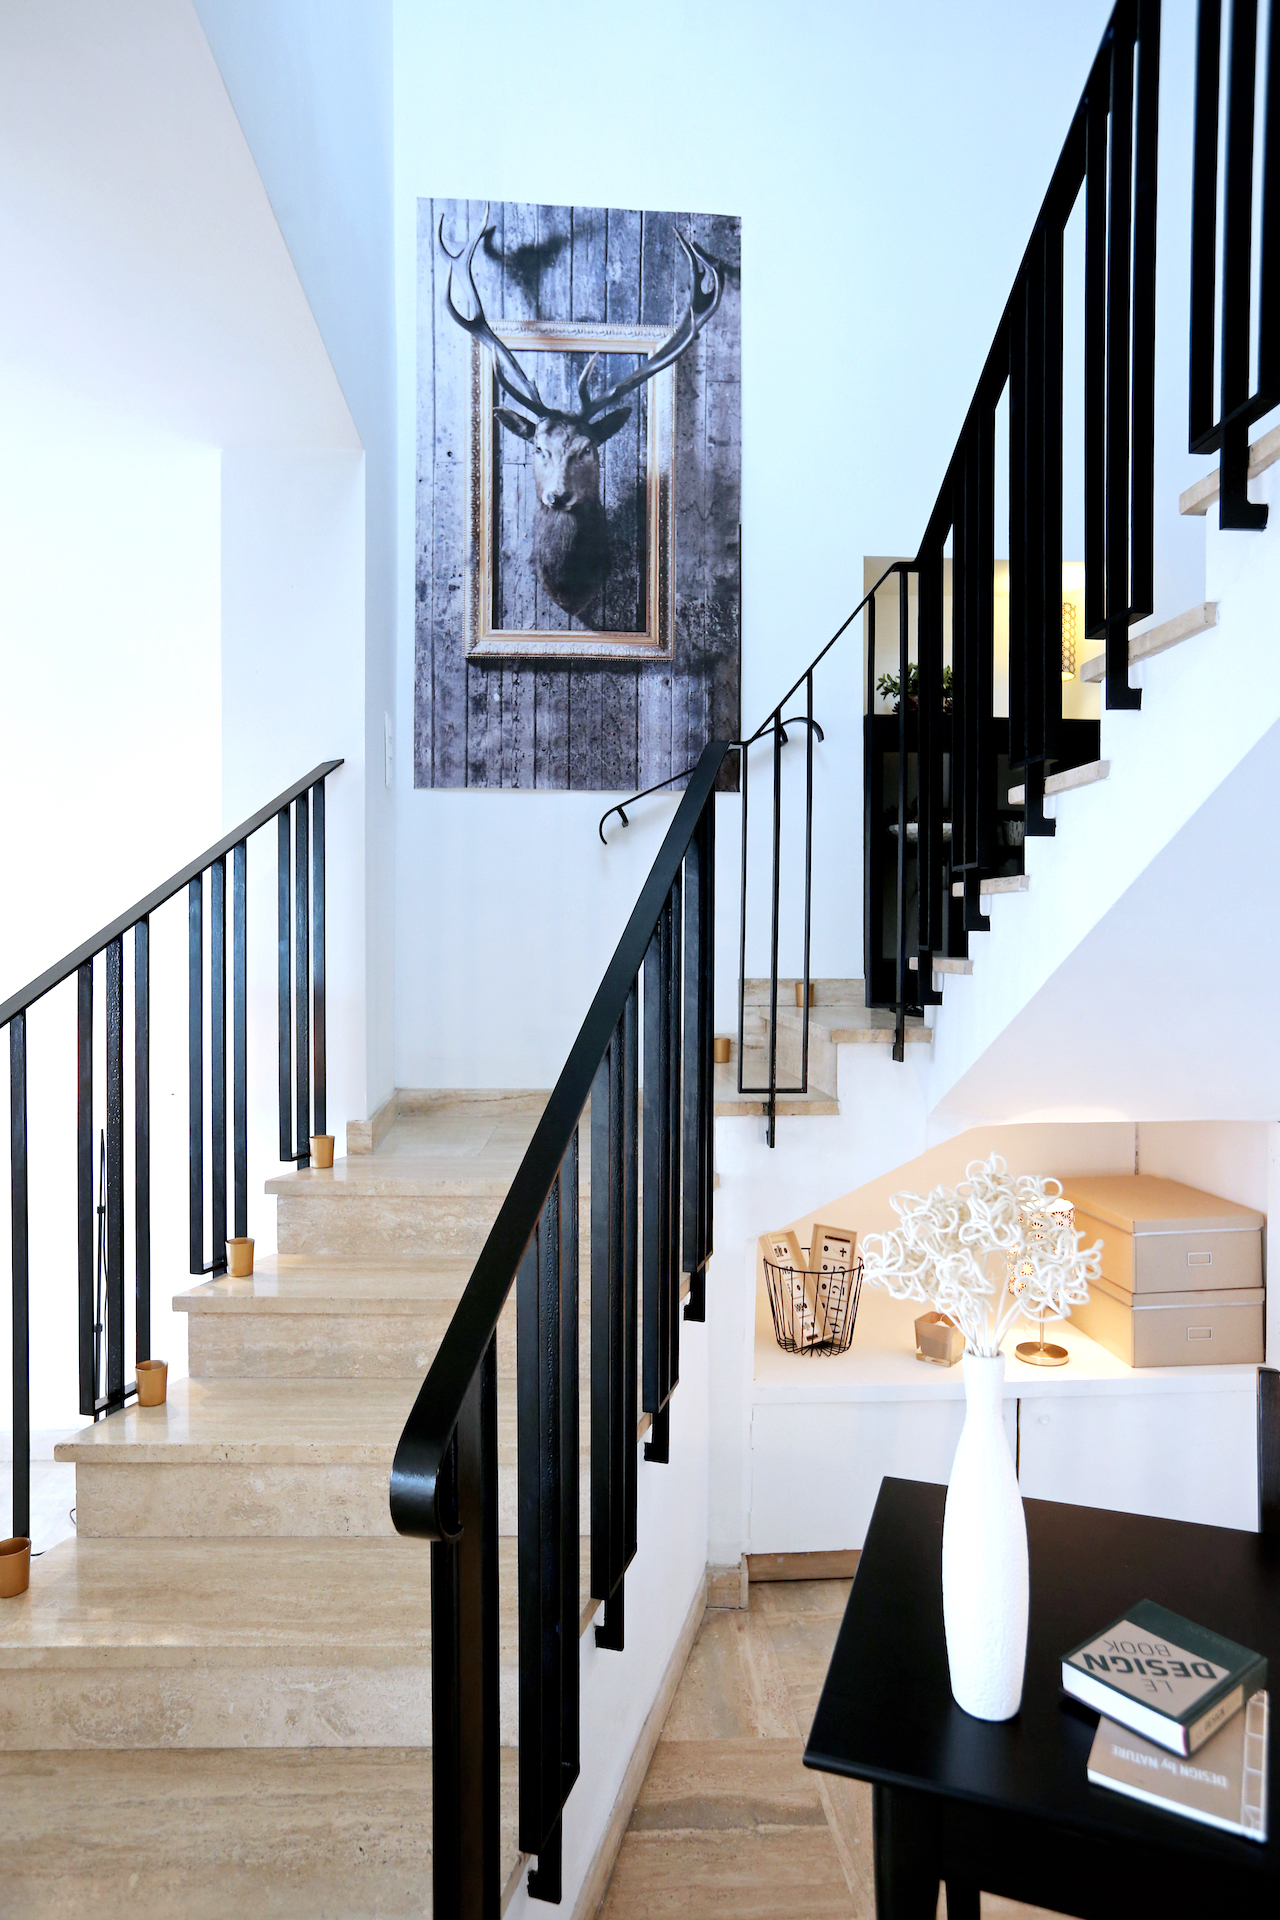 Ambiance Scandinave par Maison Modèle, Décoration d'intérieur UFDI sur Antibes, Cannes, Grasse, Nice 06 : vue d'une entrée avec escalier à rambarde noire